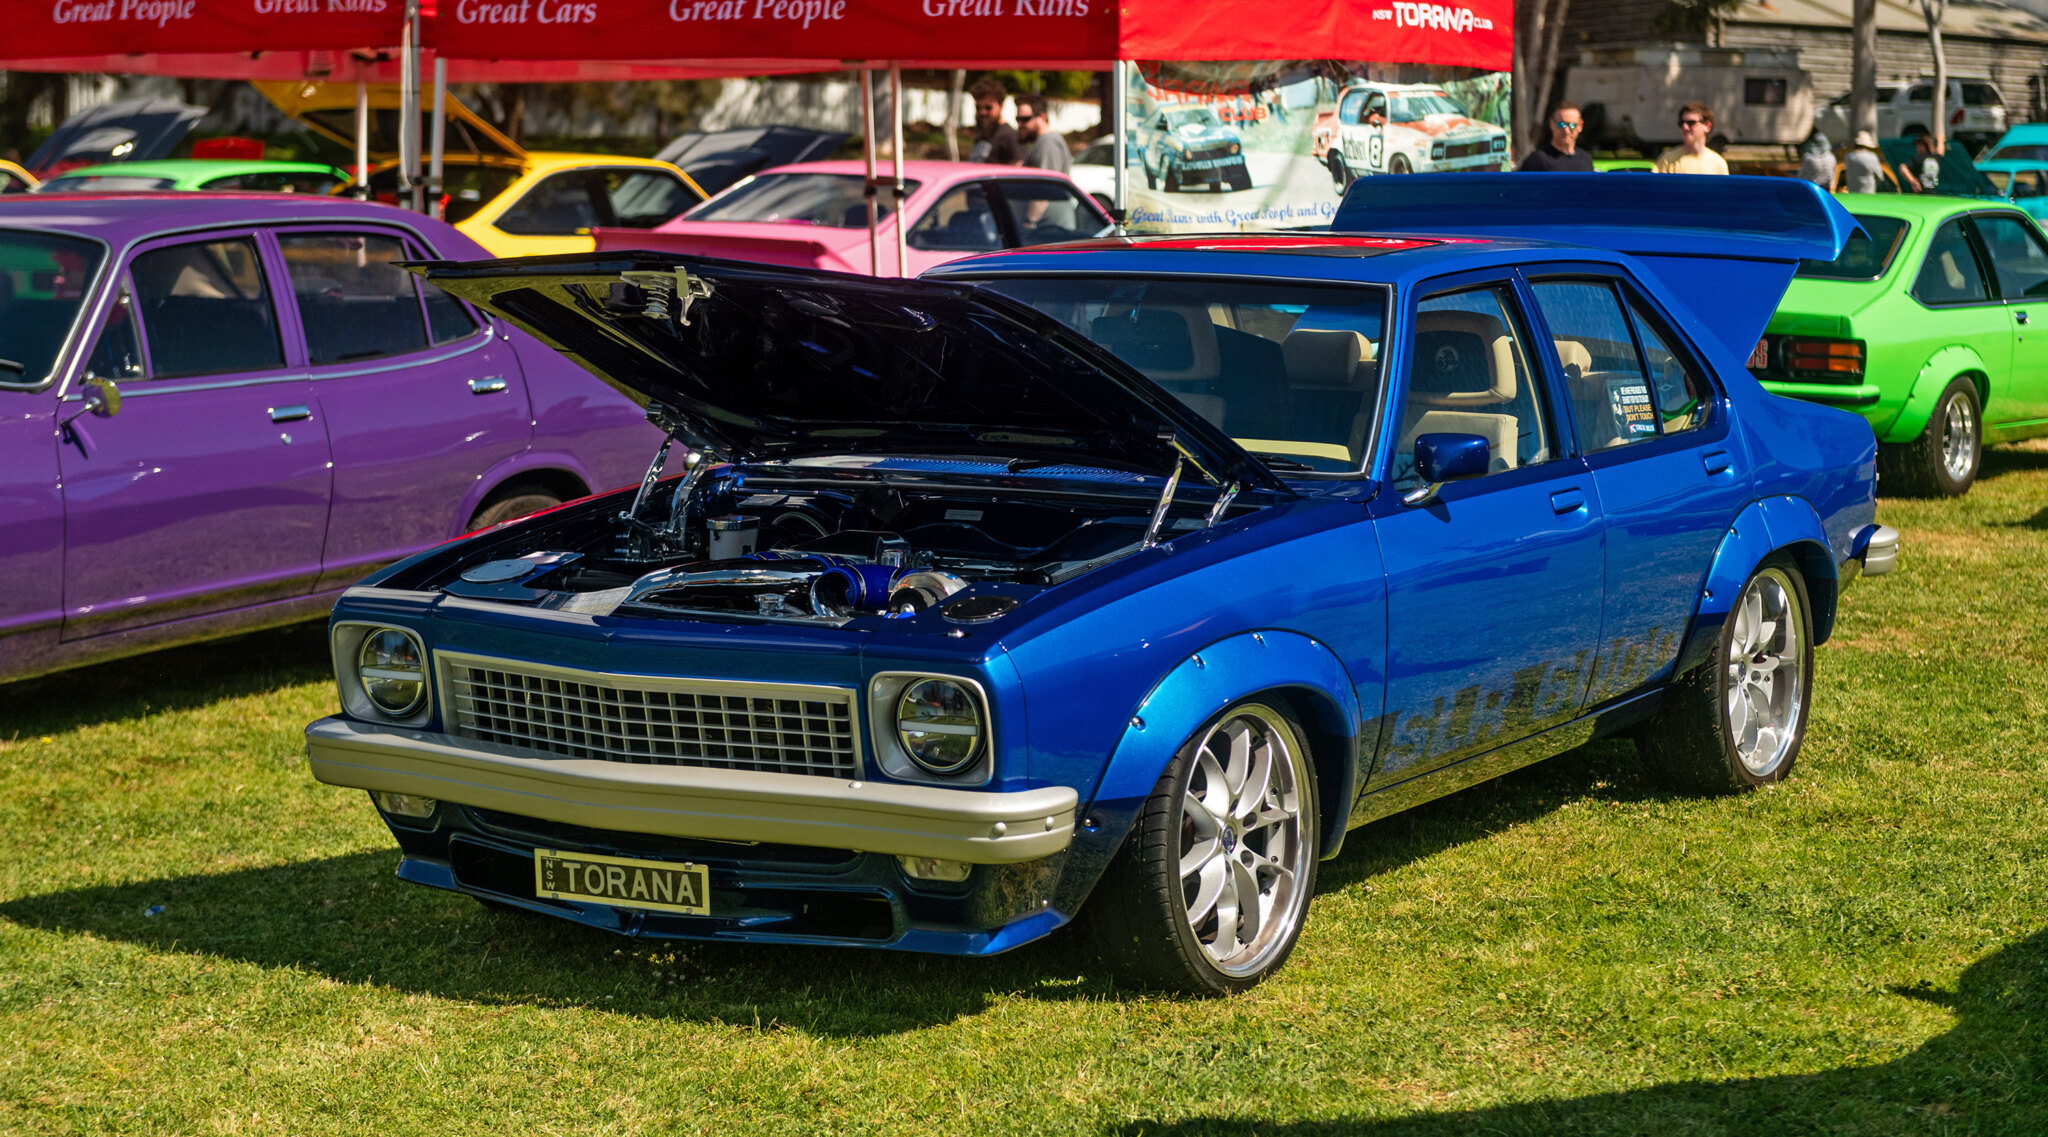 Mick Holland’s Vortech-blown Holden V8-powered LX Torana